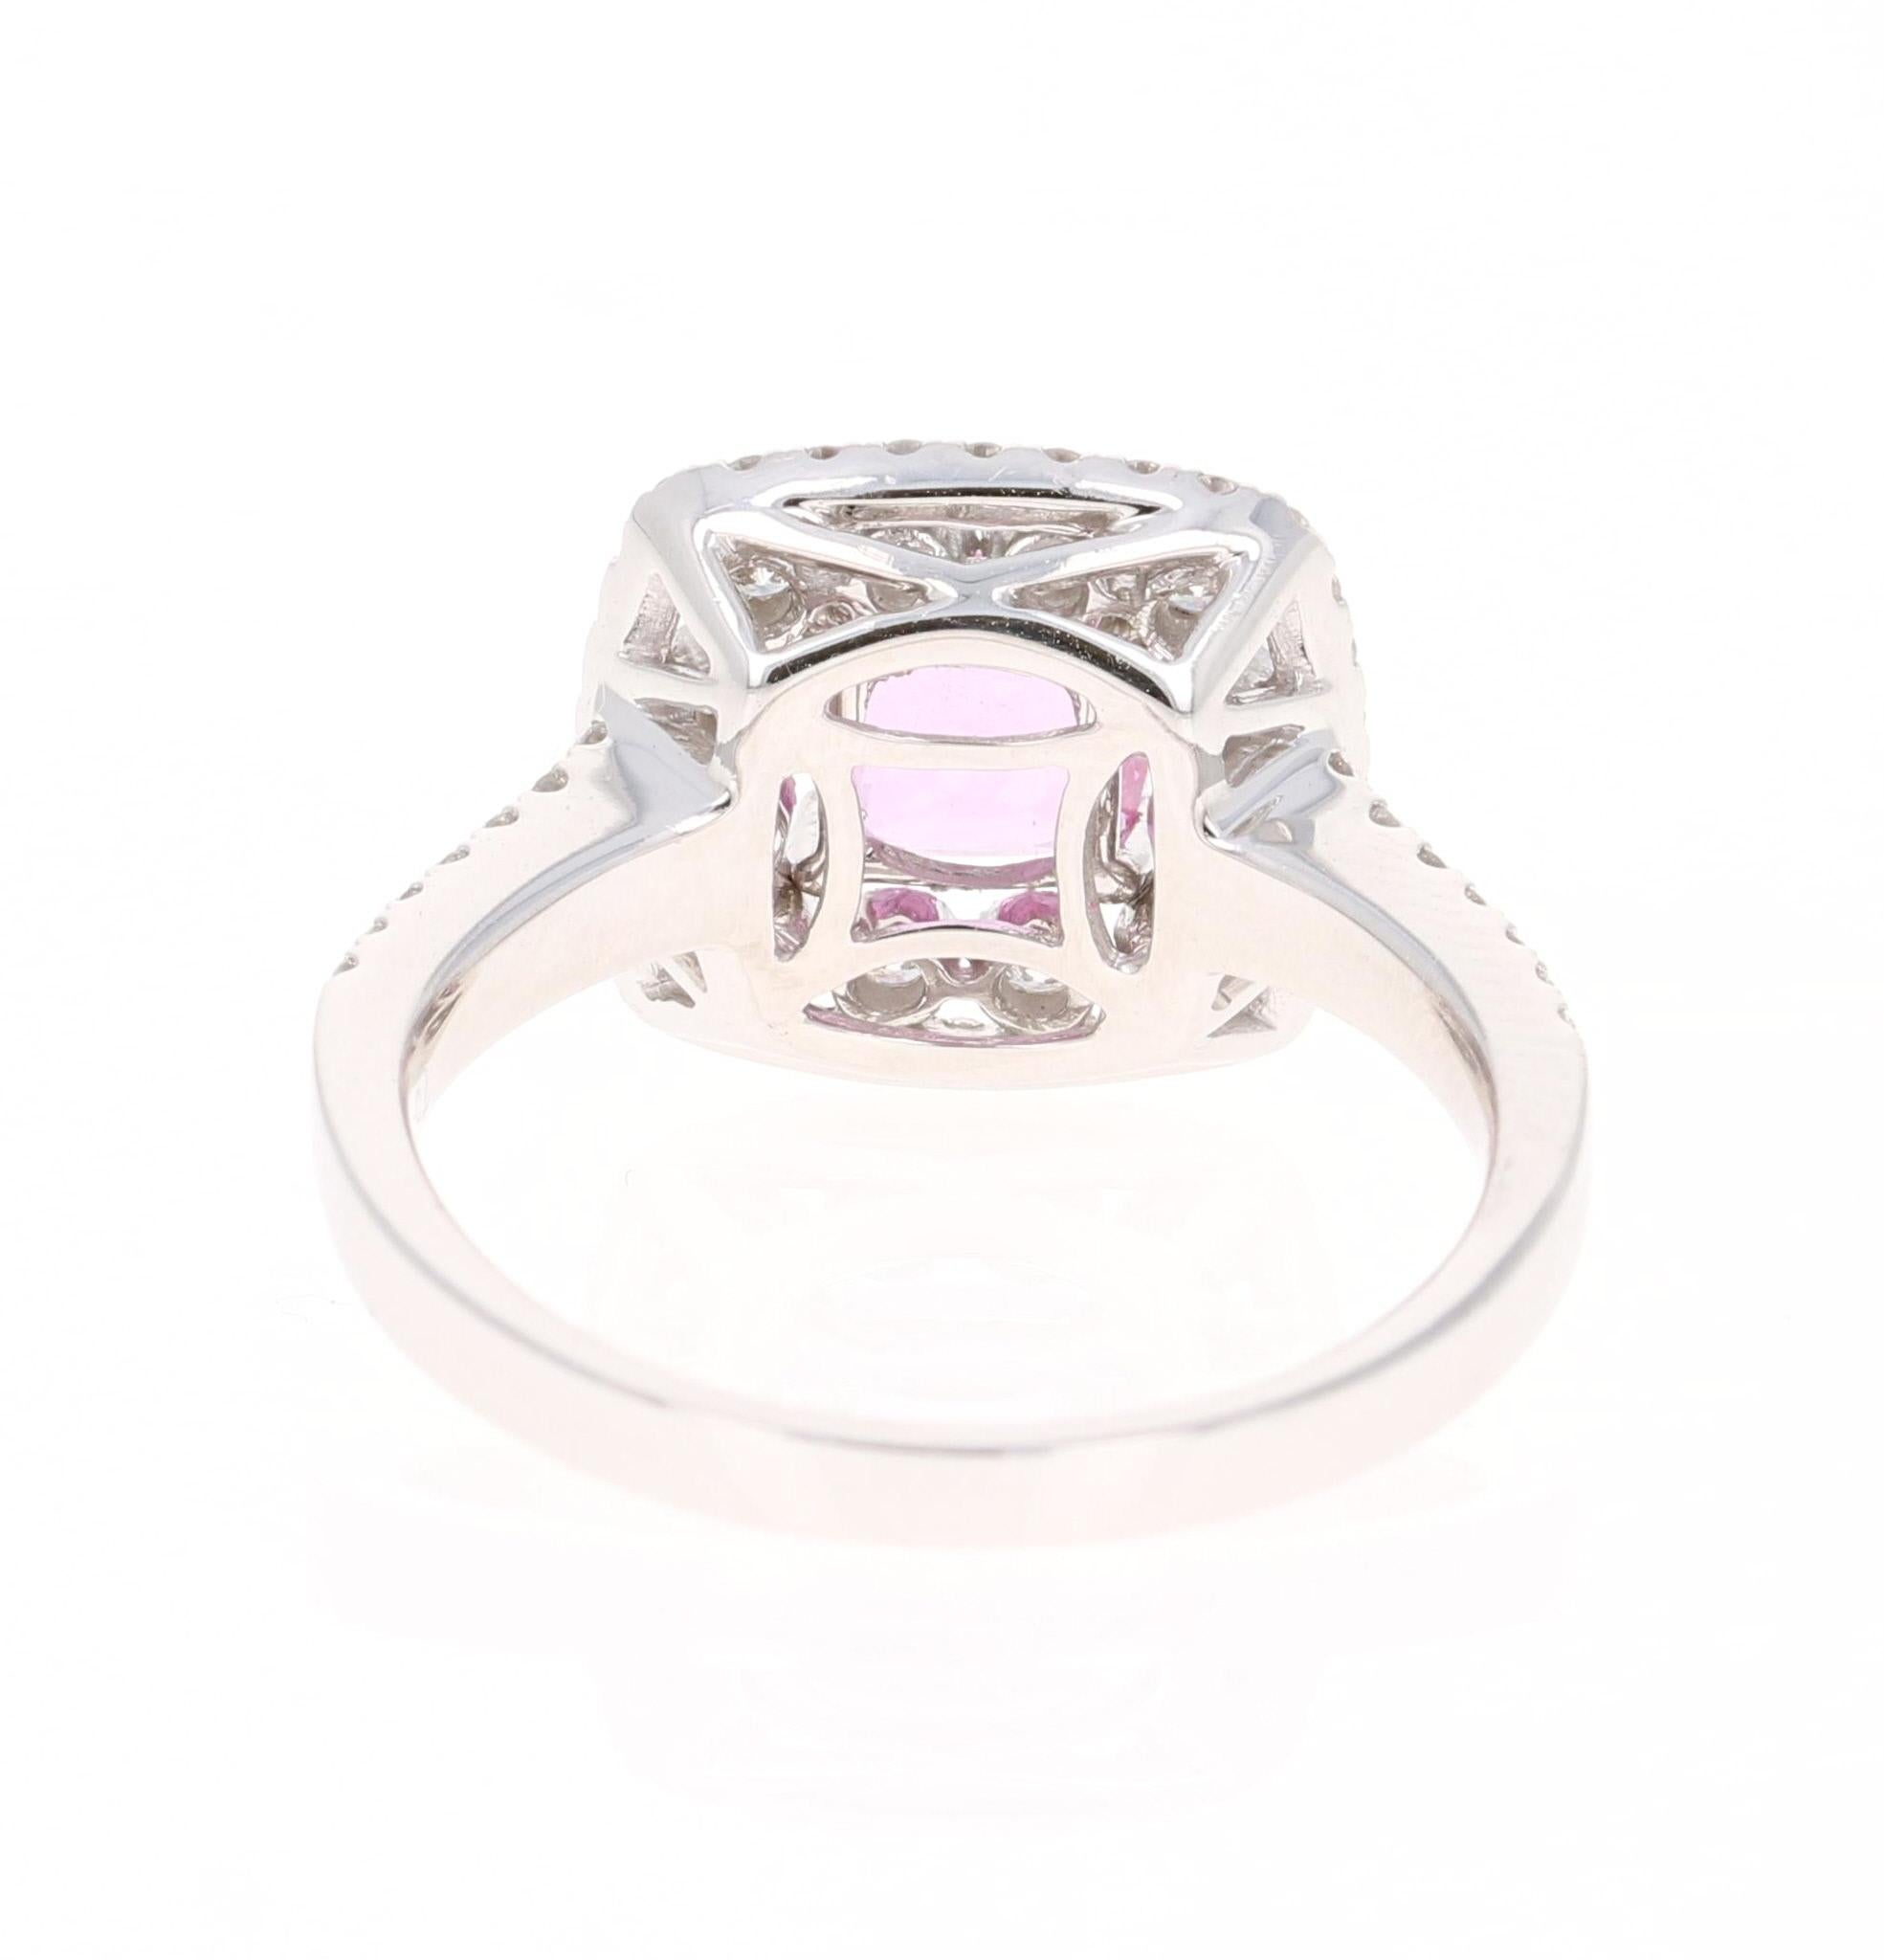 Cushion Cut 1.63 Carat Pink Sapphire Diamond 18 Karat White Gold Ring